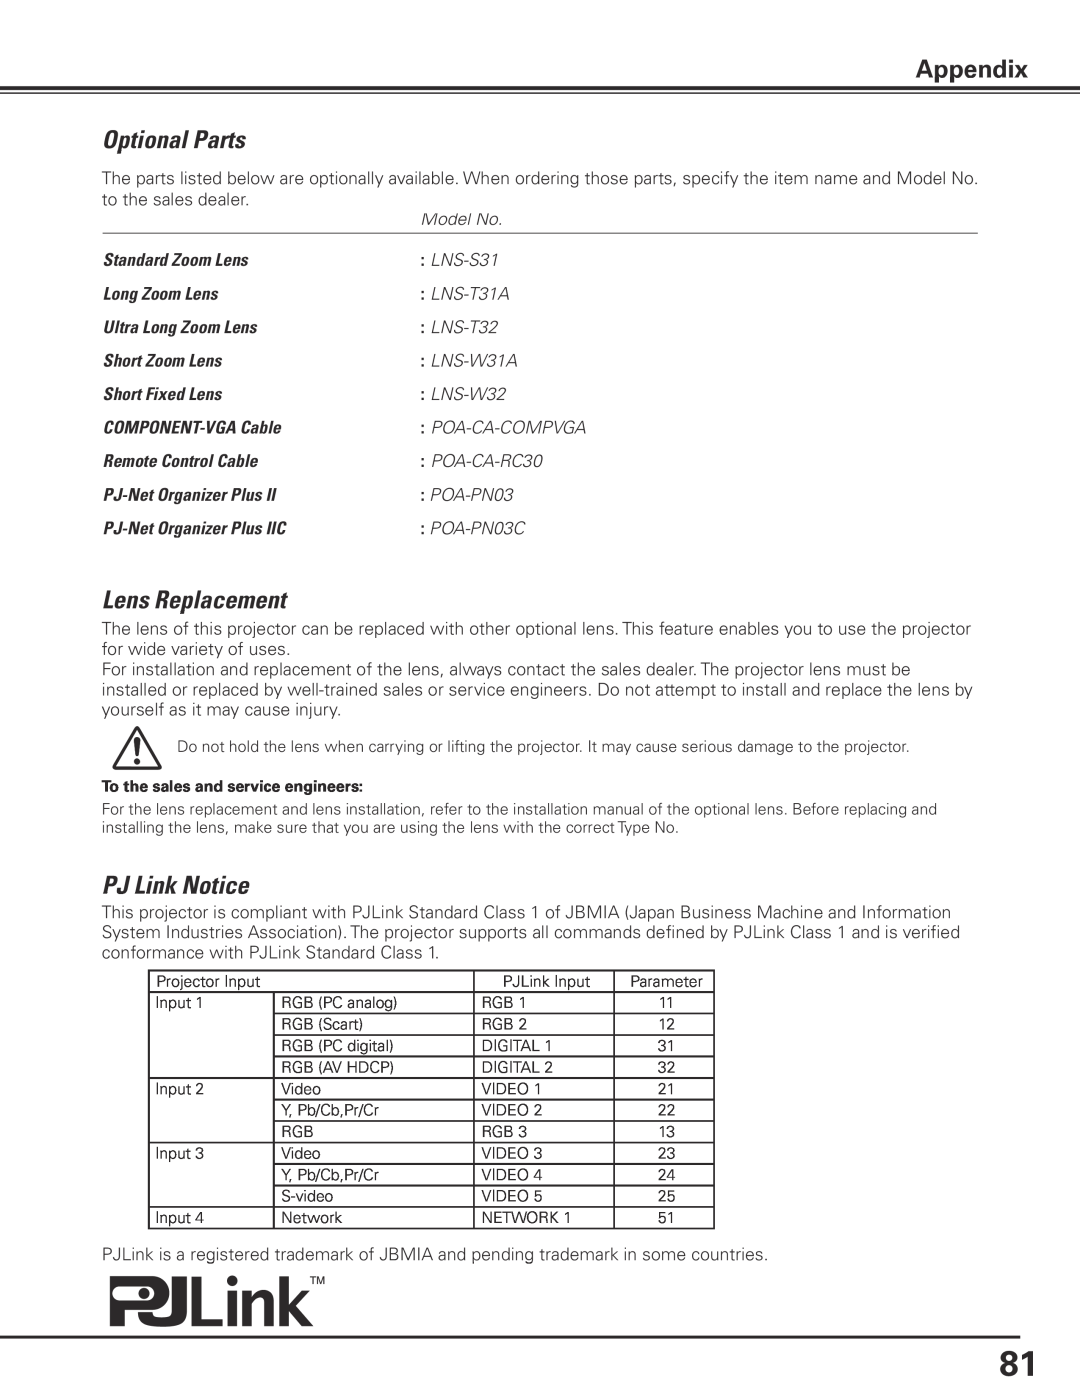 Sanyo PLC-XP200L owner manual Optional Parts, Lens Replacement, PJ Link Notice, Appendix 